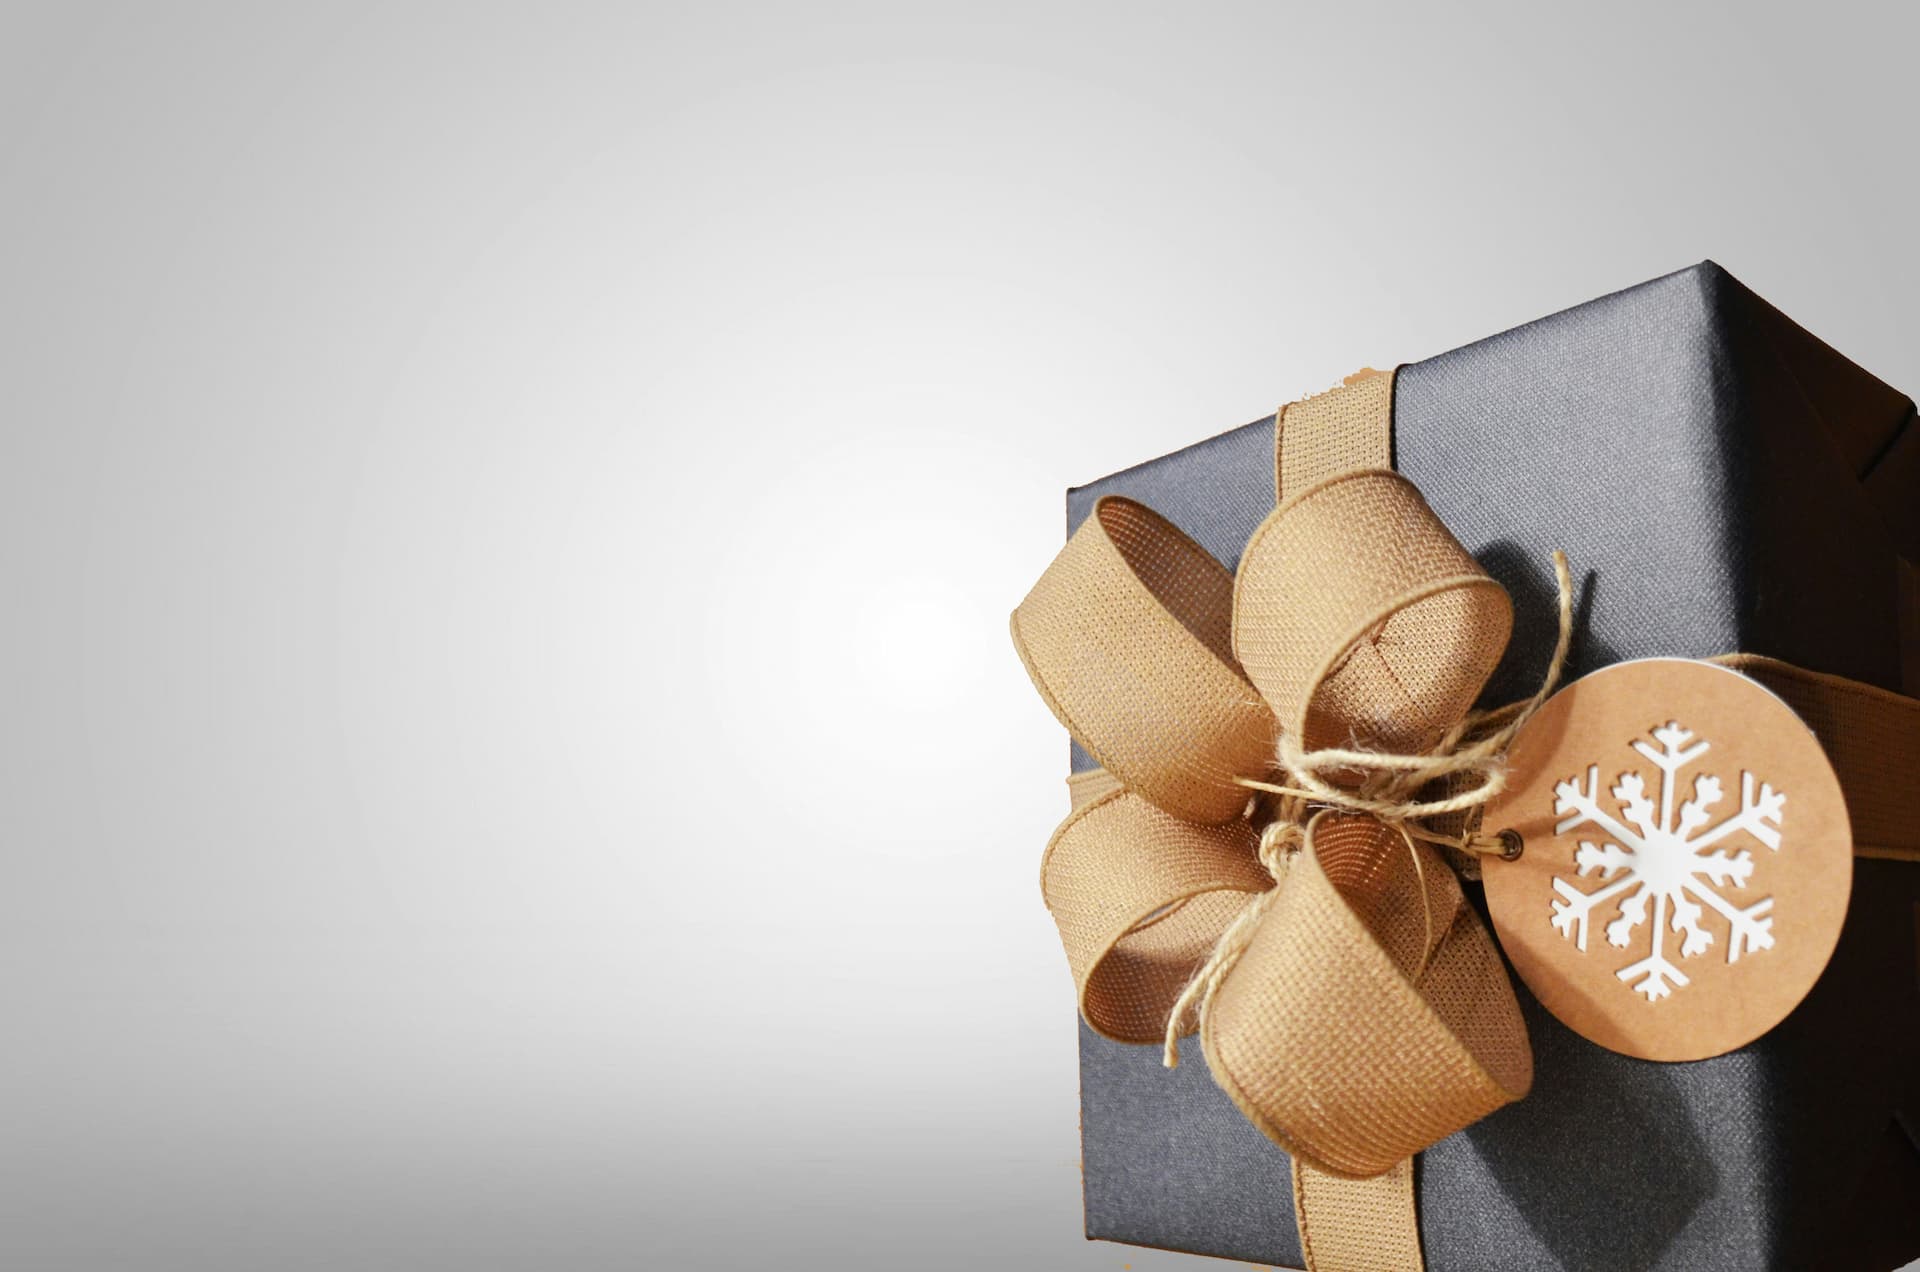 Gift Box for Christmas